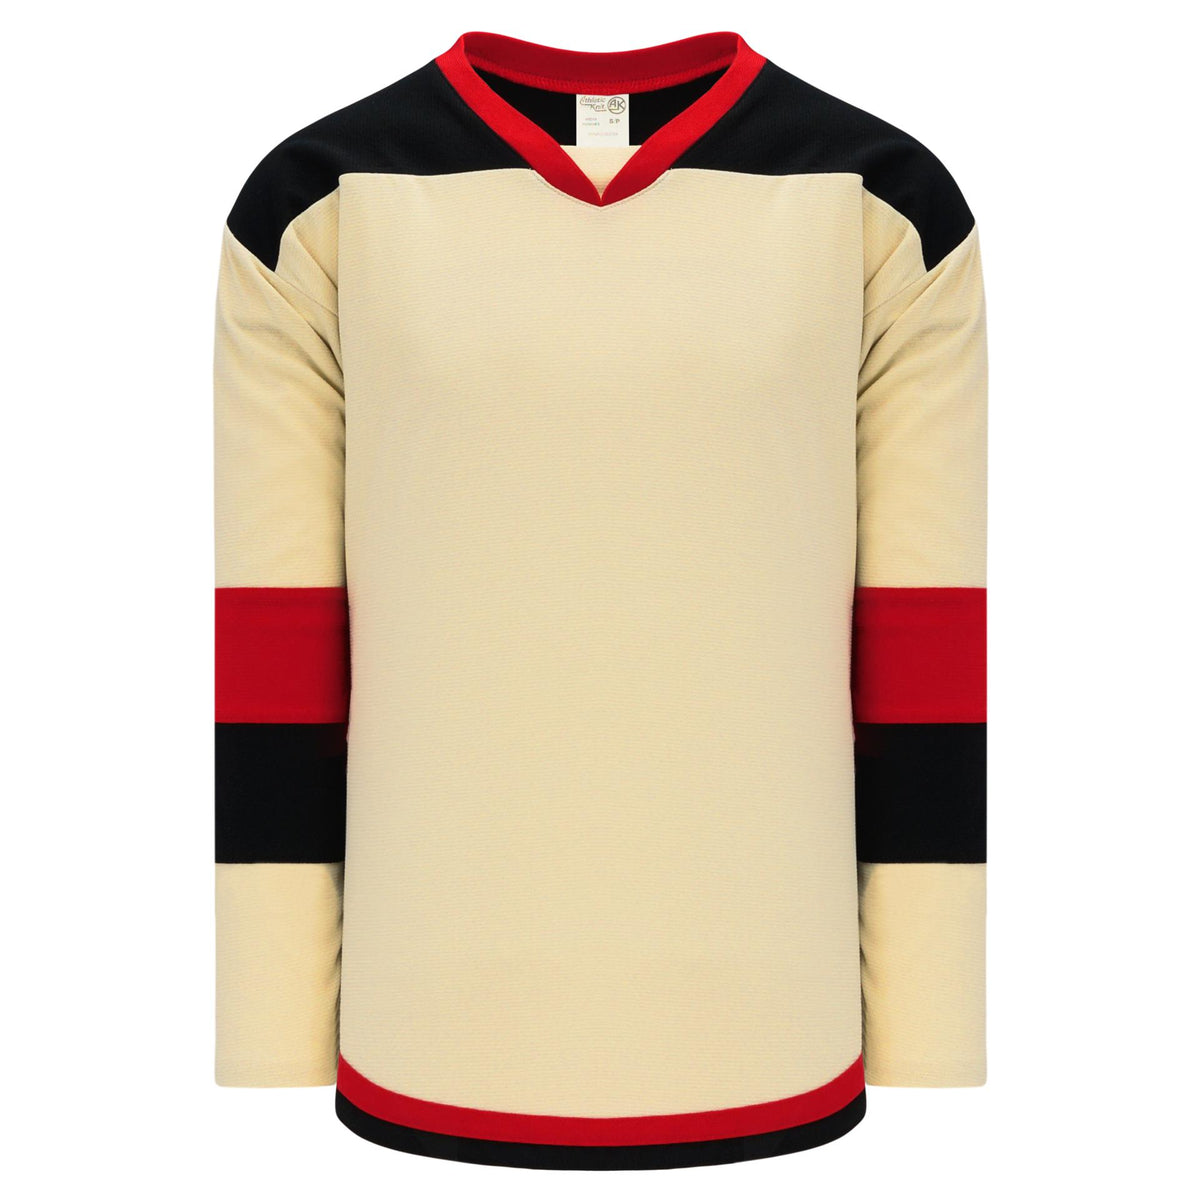 League Style Black Red - Hockey Jerseys - Keener Jerseys